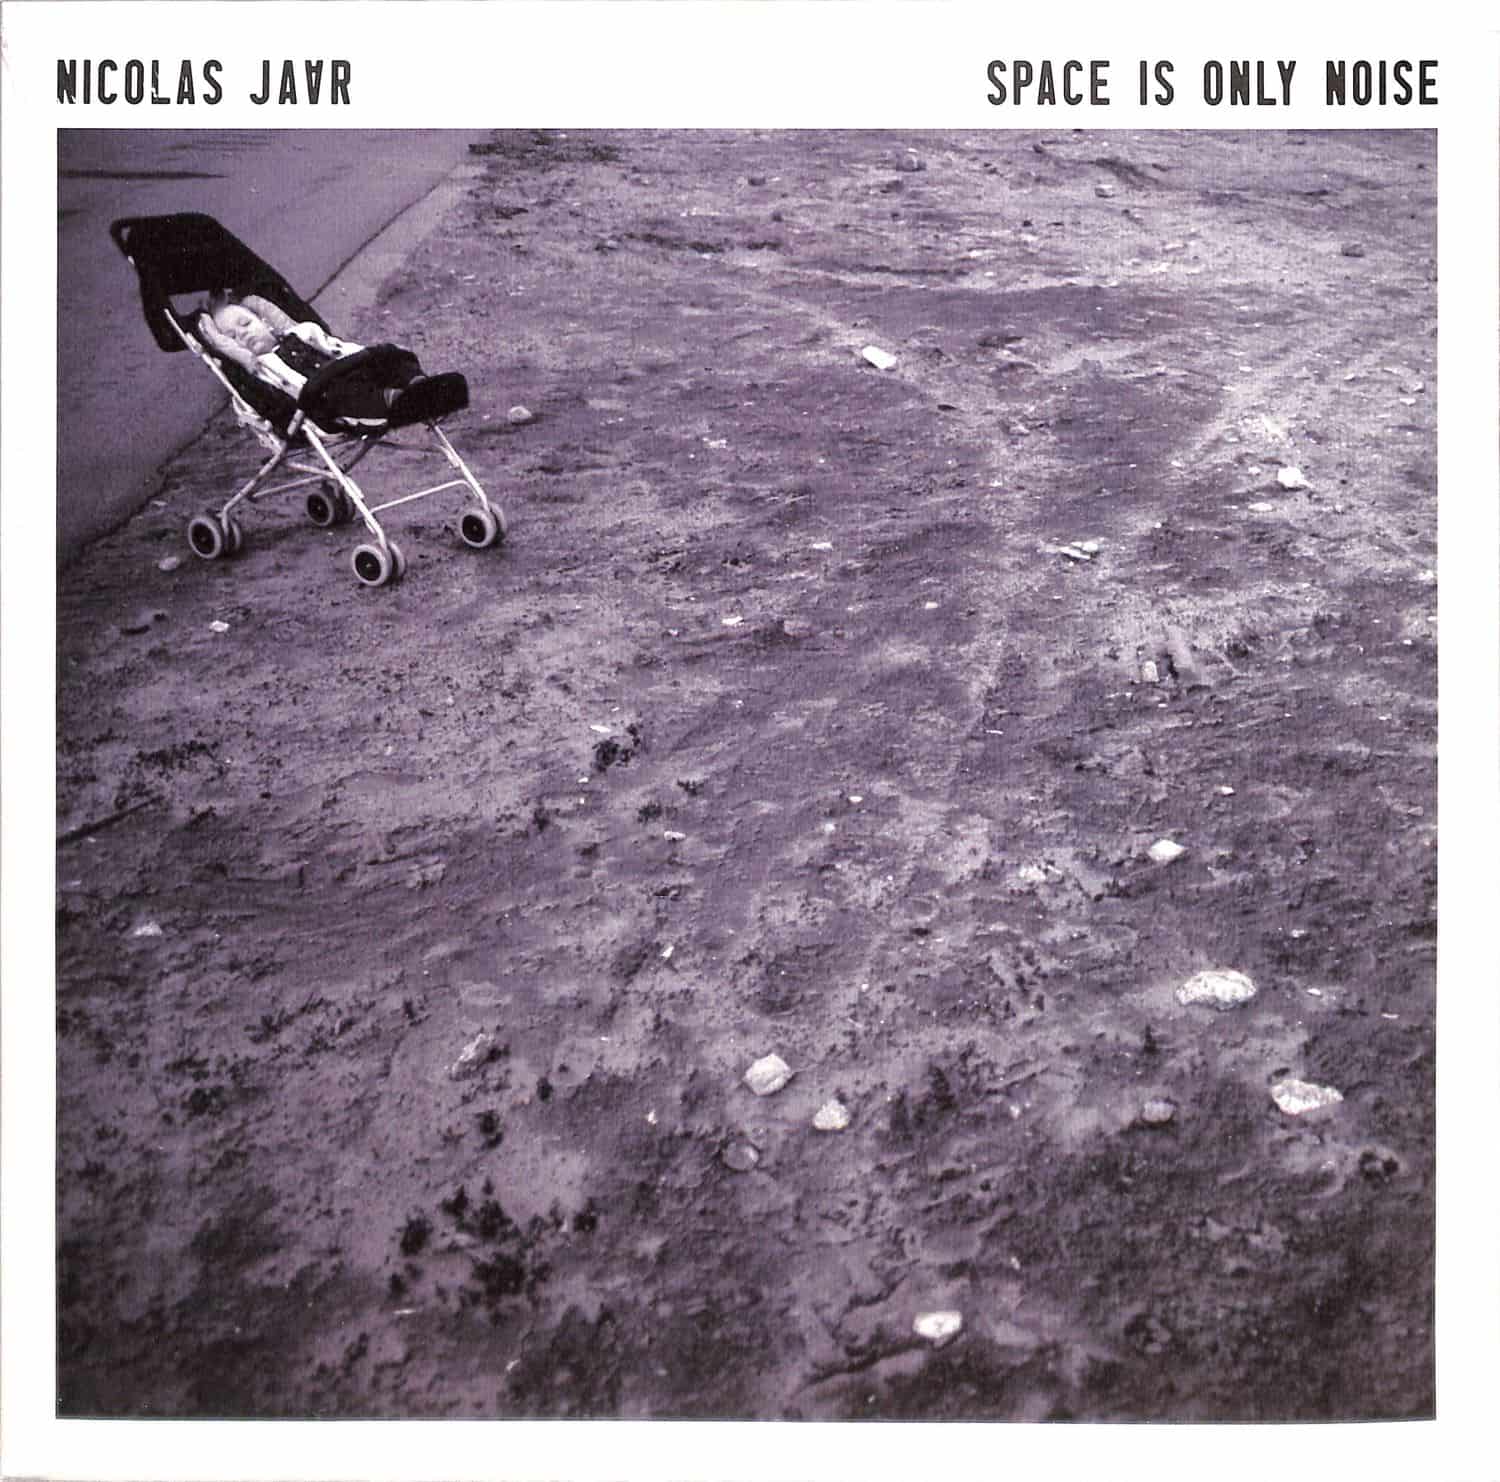 Nicolas Jaar - SPACE IS ONLY NOISE 